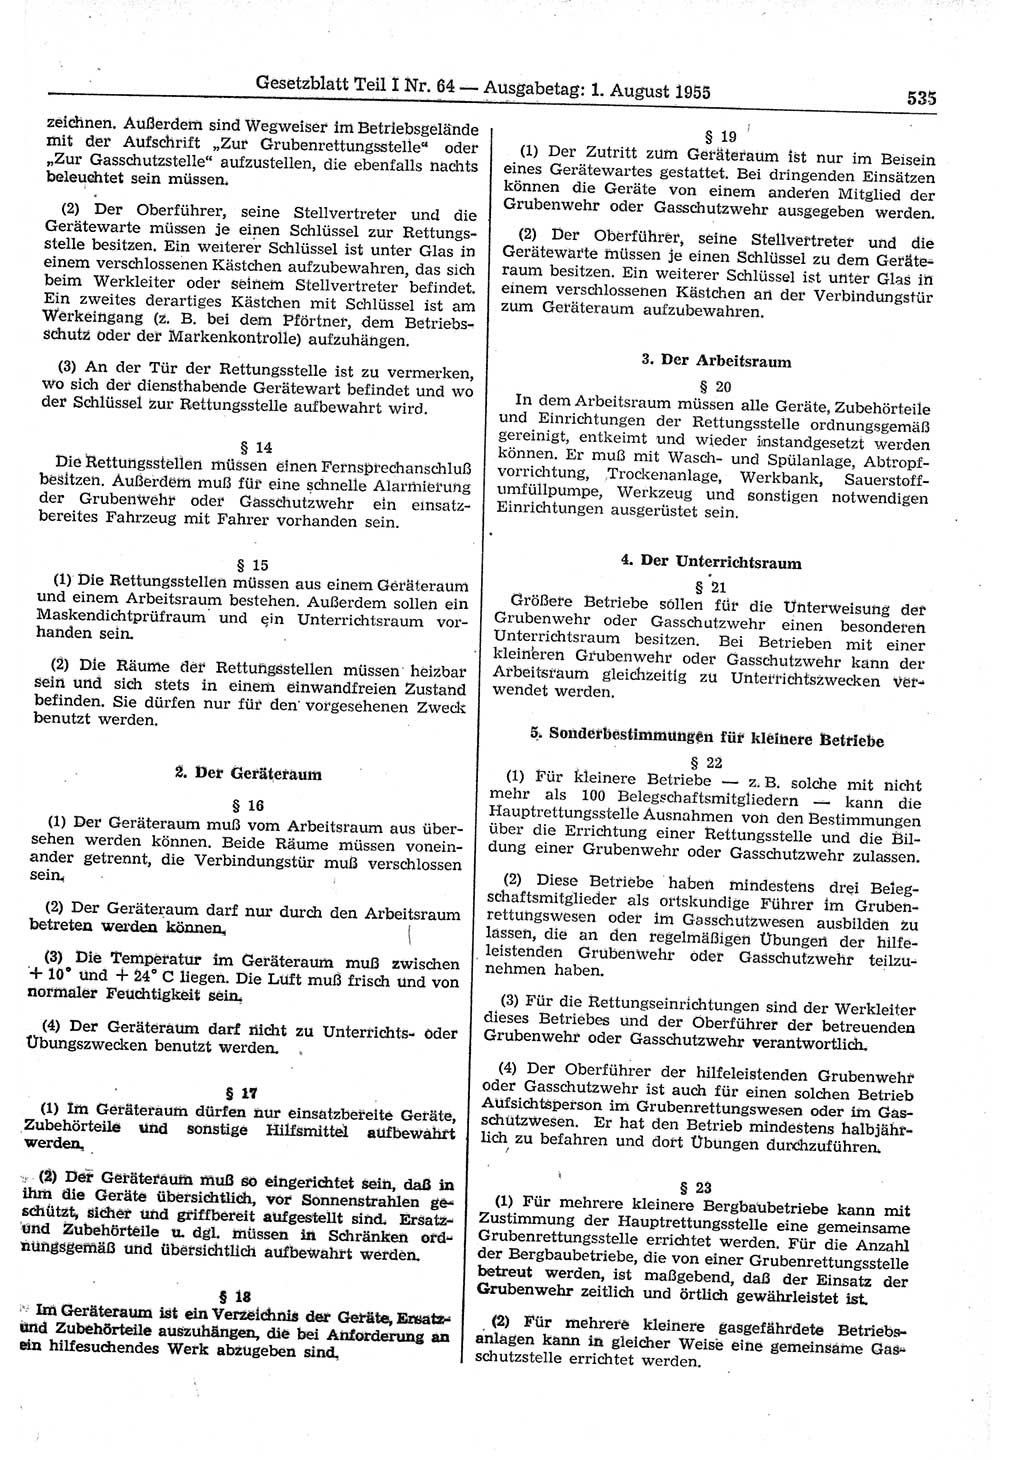 Gesetzblatt (GBl.) der Deutschen Demokratischen Republik (DDR) Teil Ⅰ 1955, Seite 535 (GBl. DDR Ⅰ 1955, S. 535)